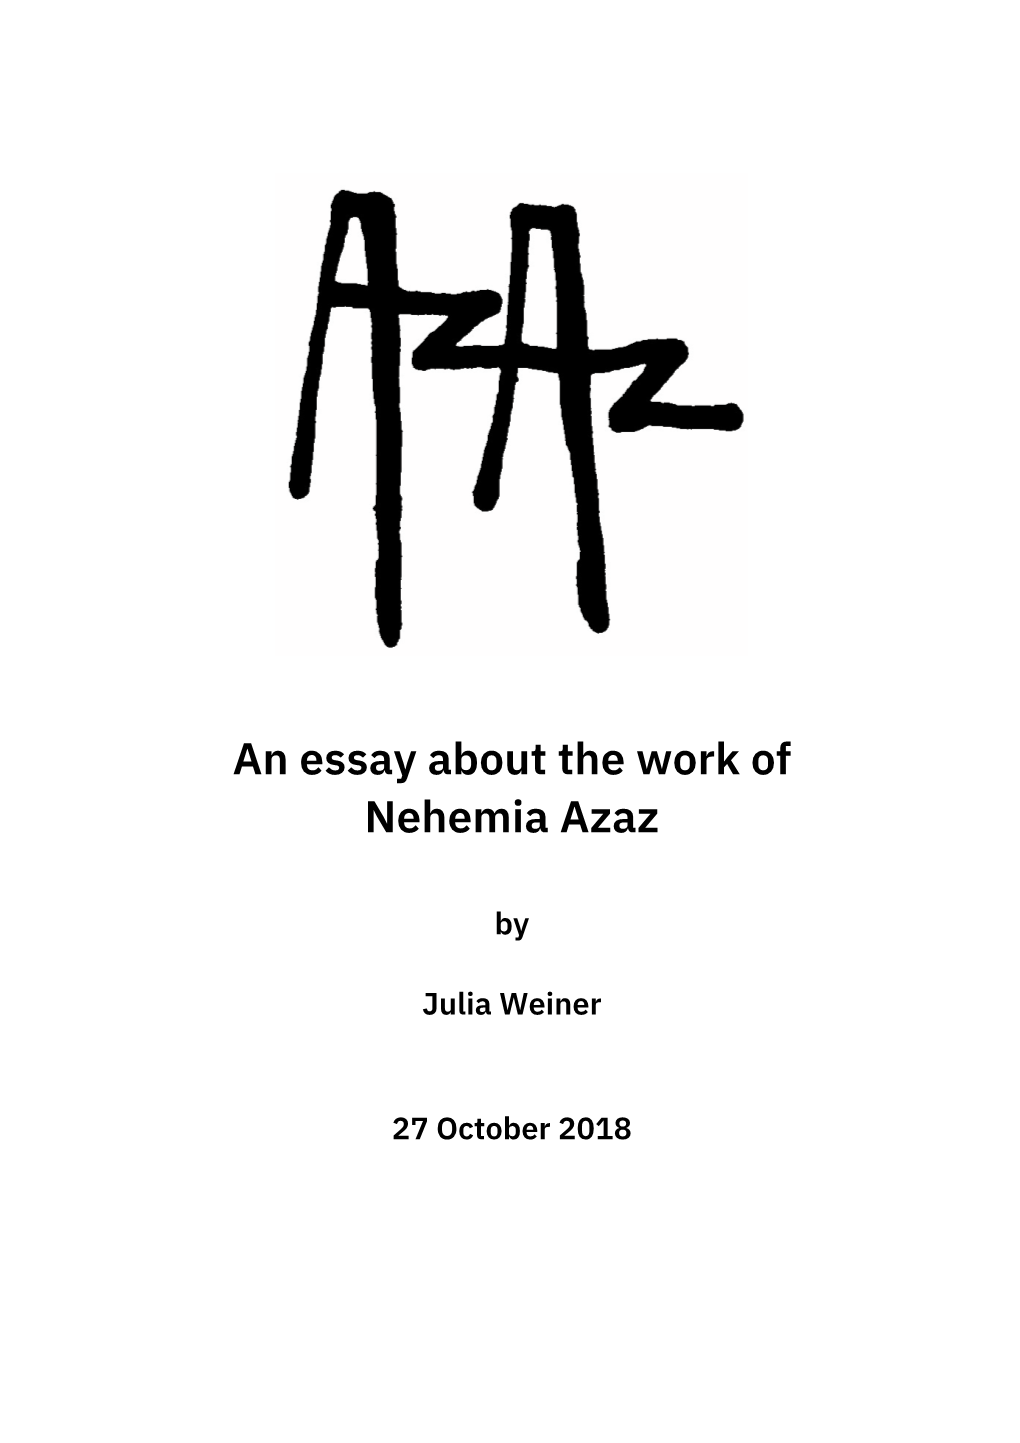 An Essay About the Work of Nehemia Azaz